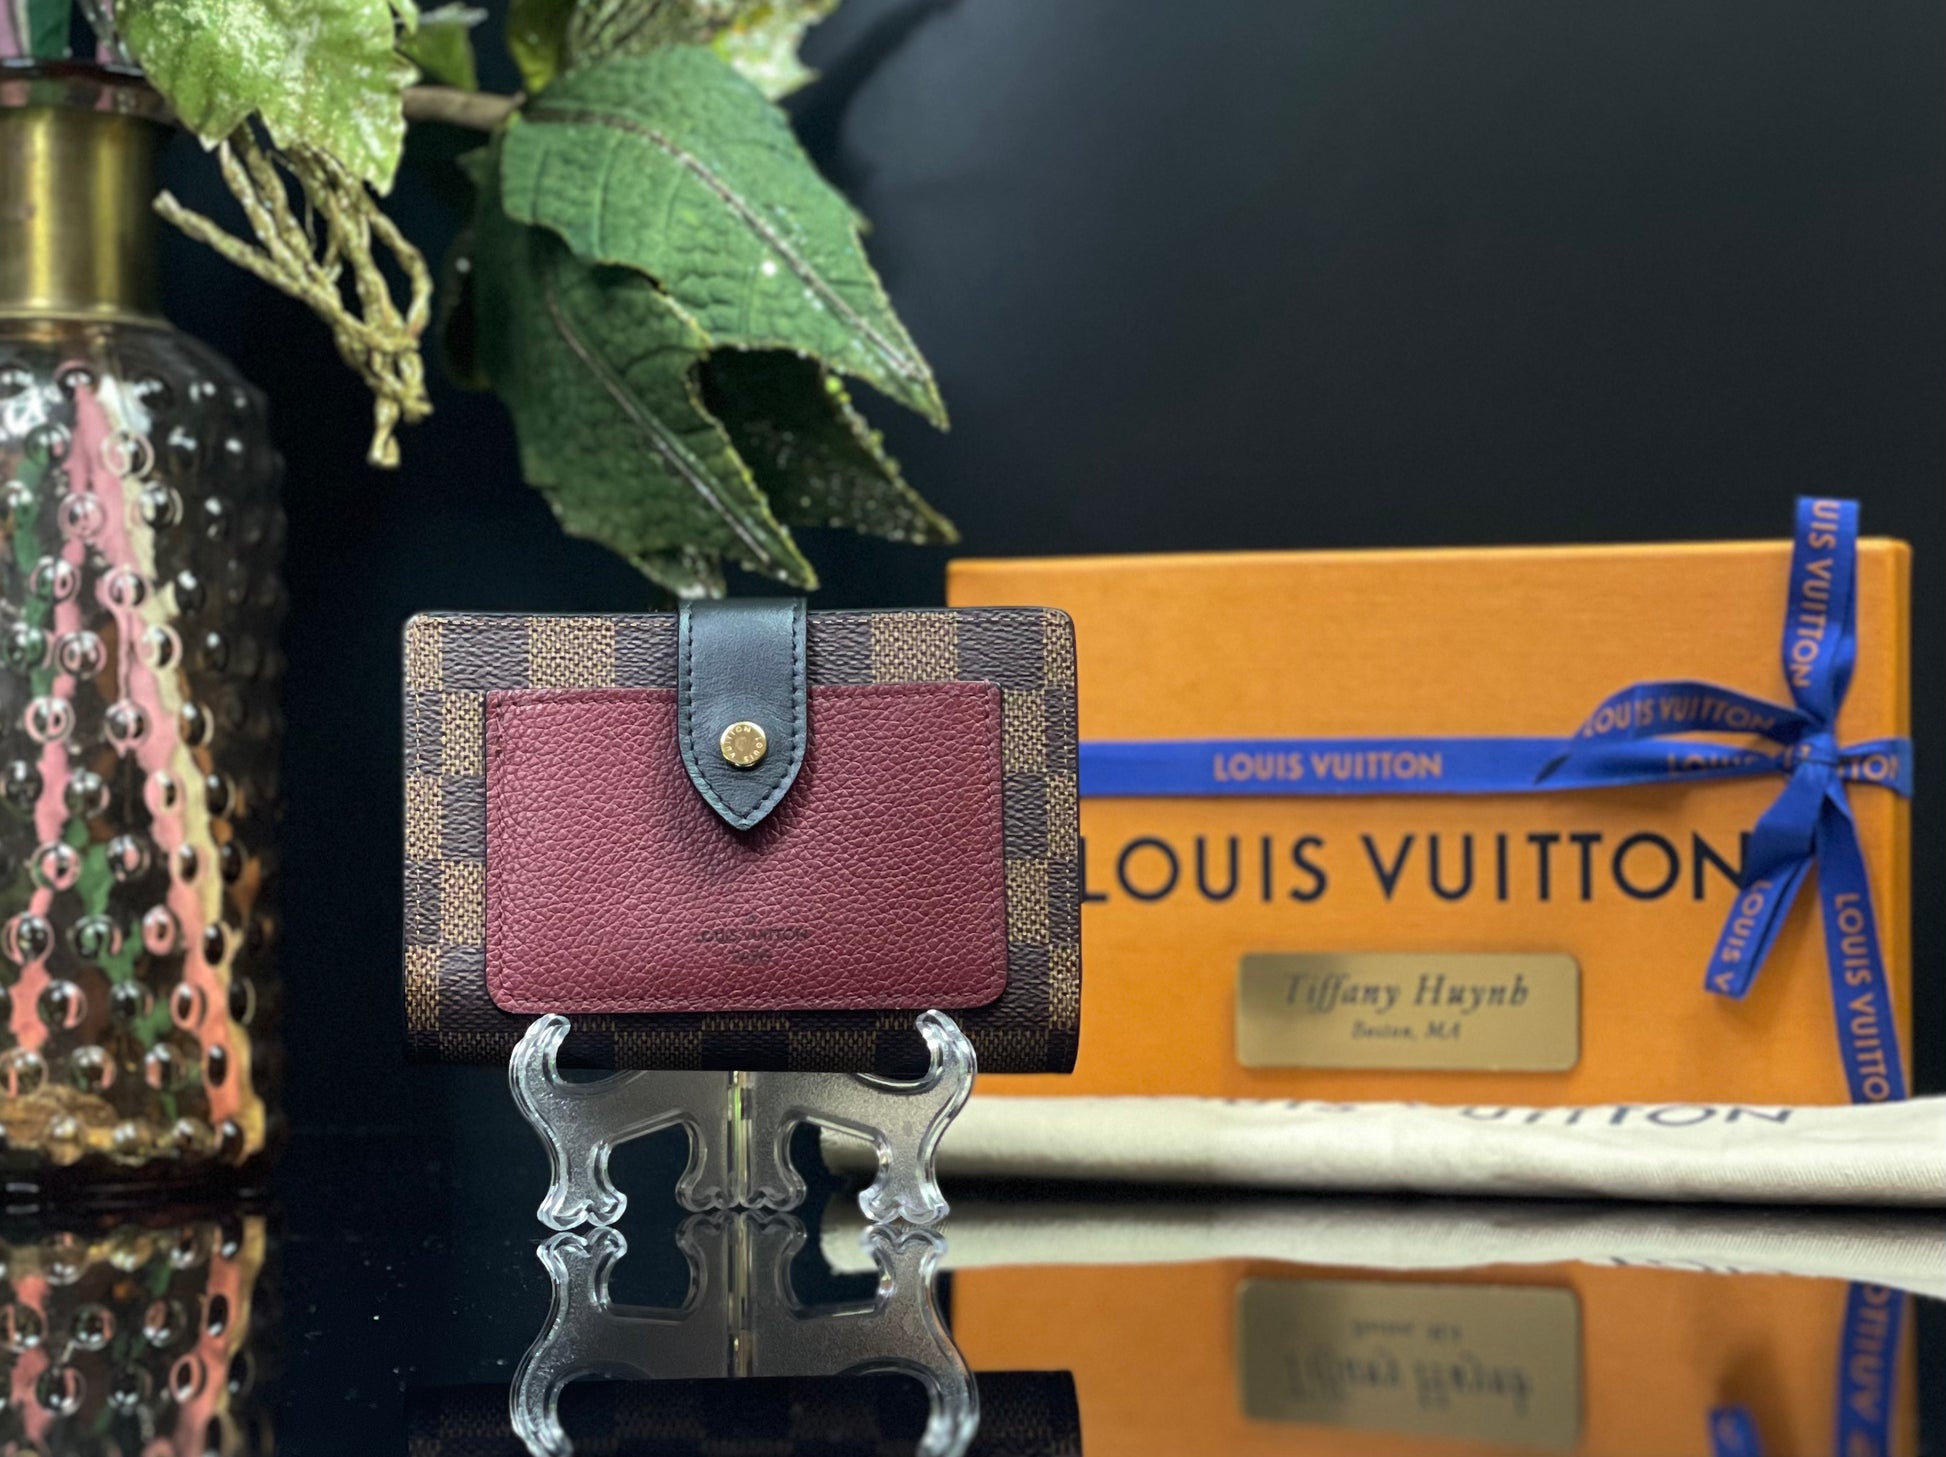 Juliette Wallet Review, Louis Vuitton